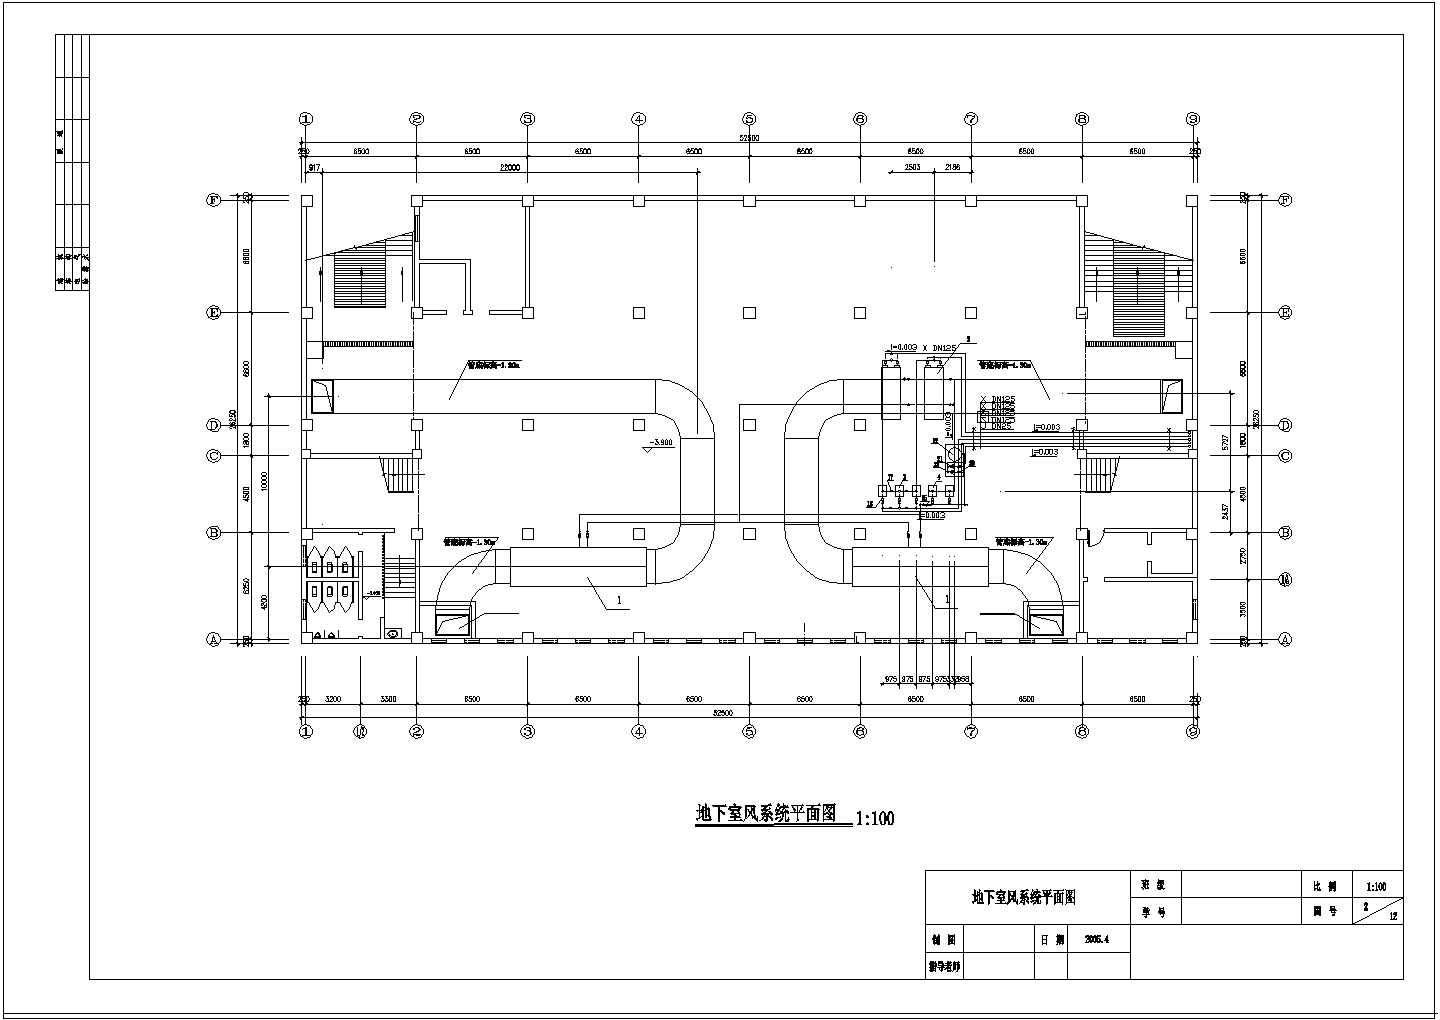 【上海】四层商场空气调节系统设计施工图